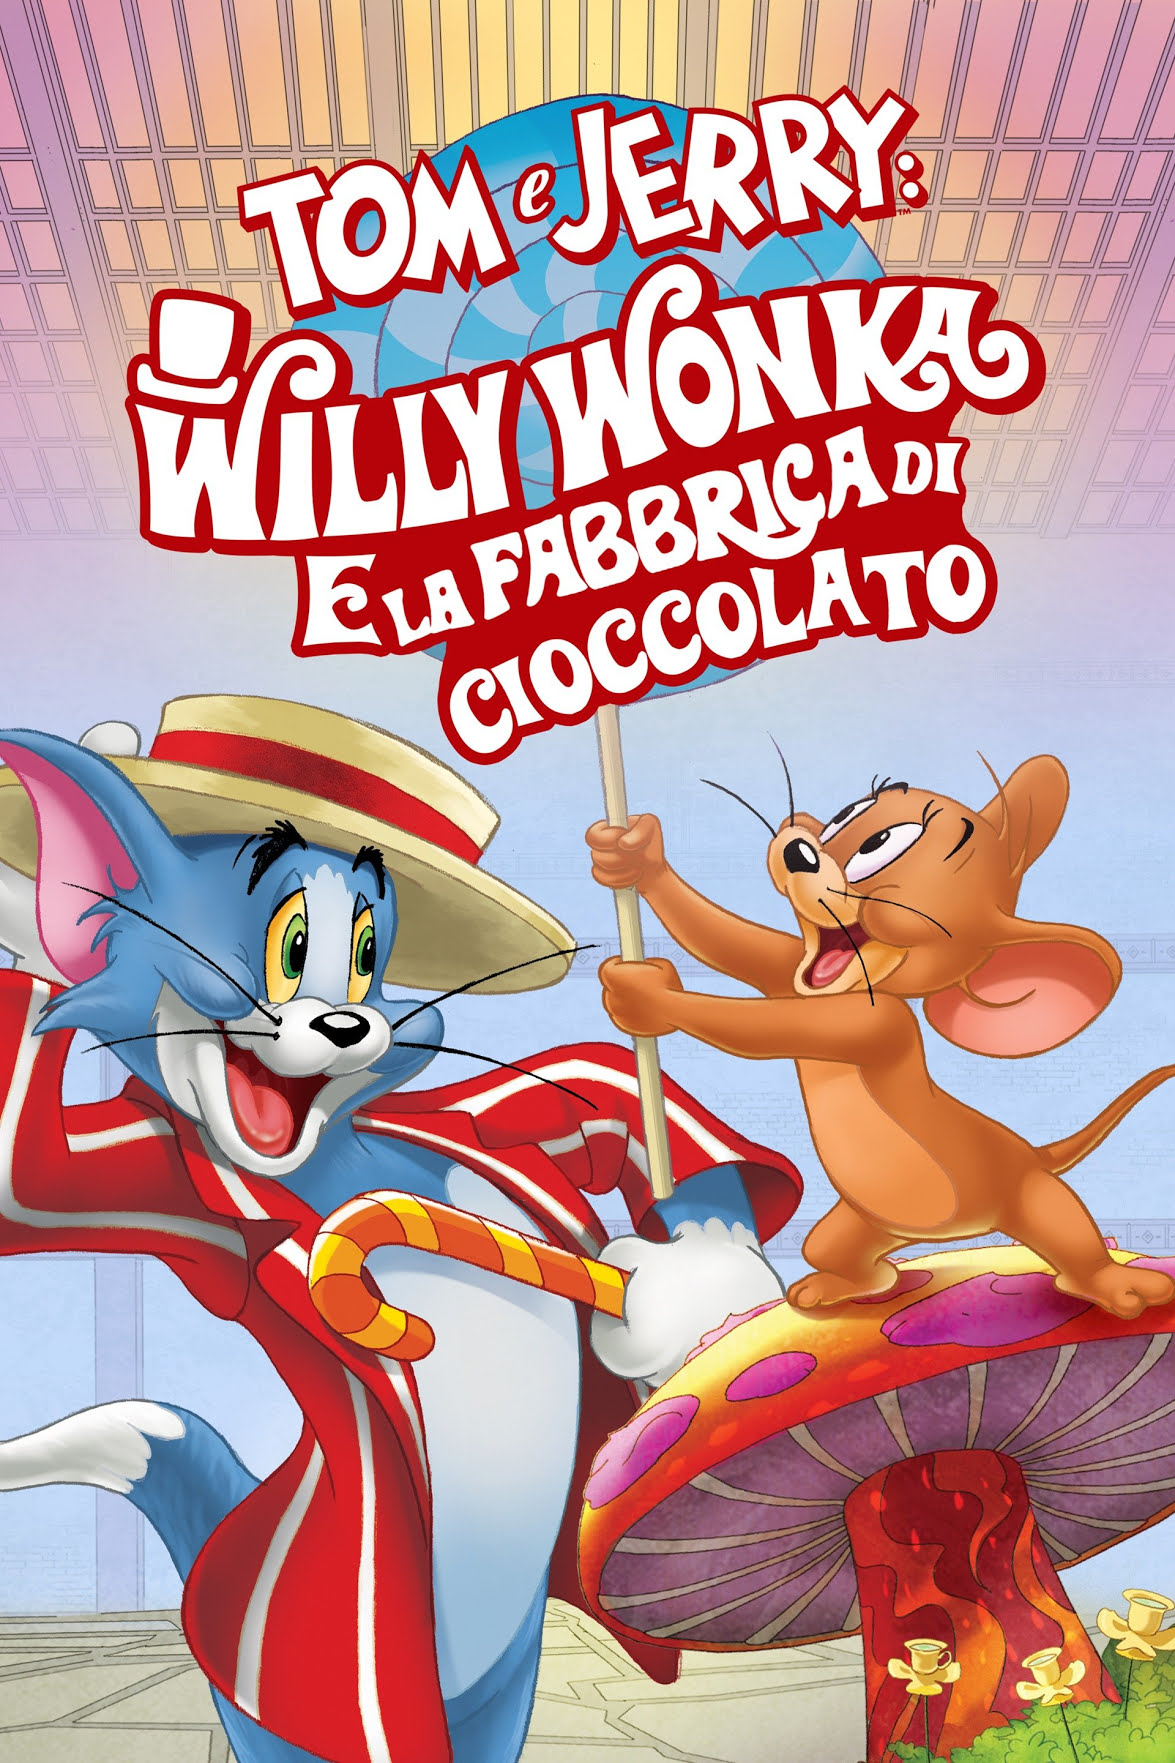 Tom & Jerry: Willy Wonka e la fabbrica di cioccolato [HD] (2017)